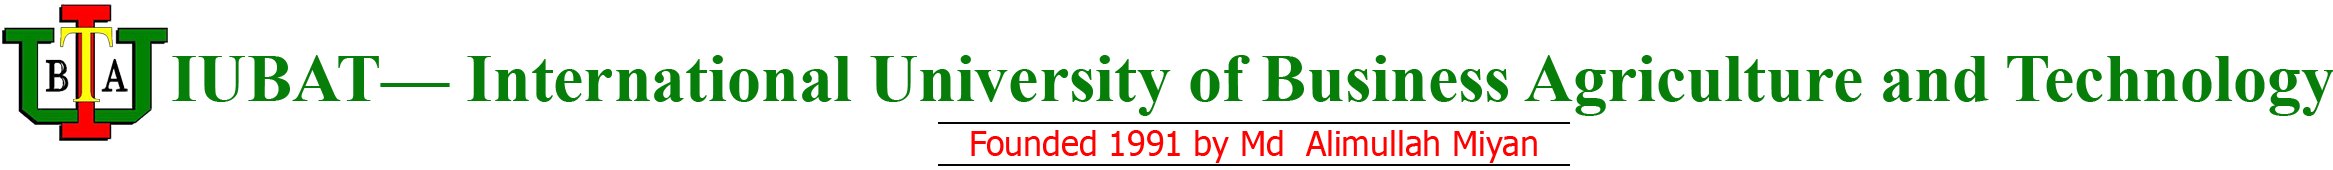 IUBAT Logo